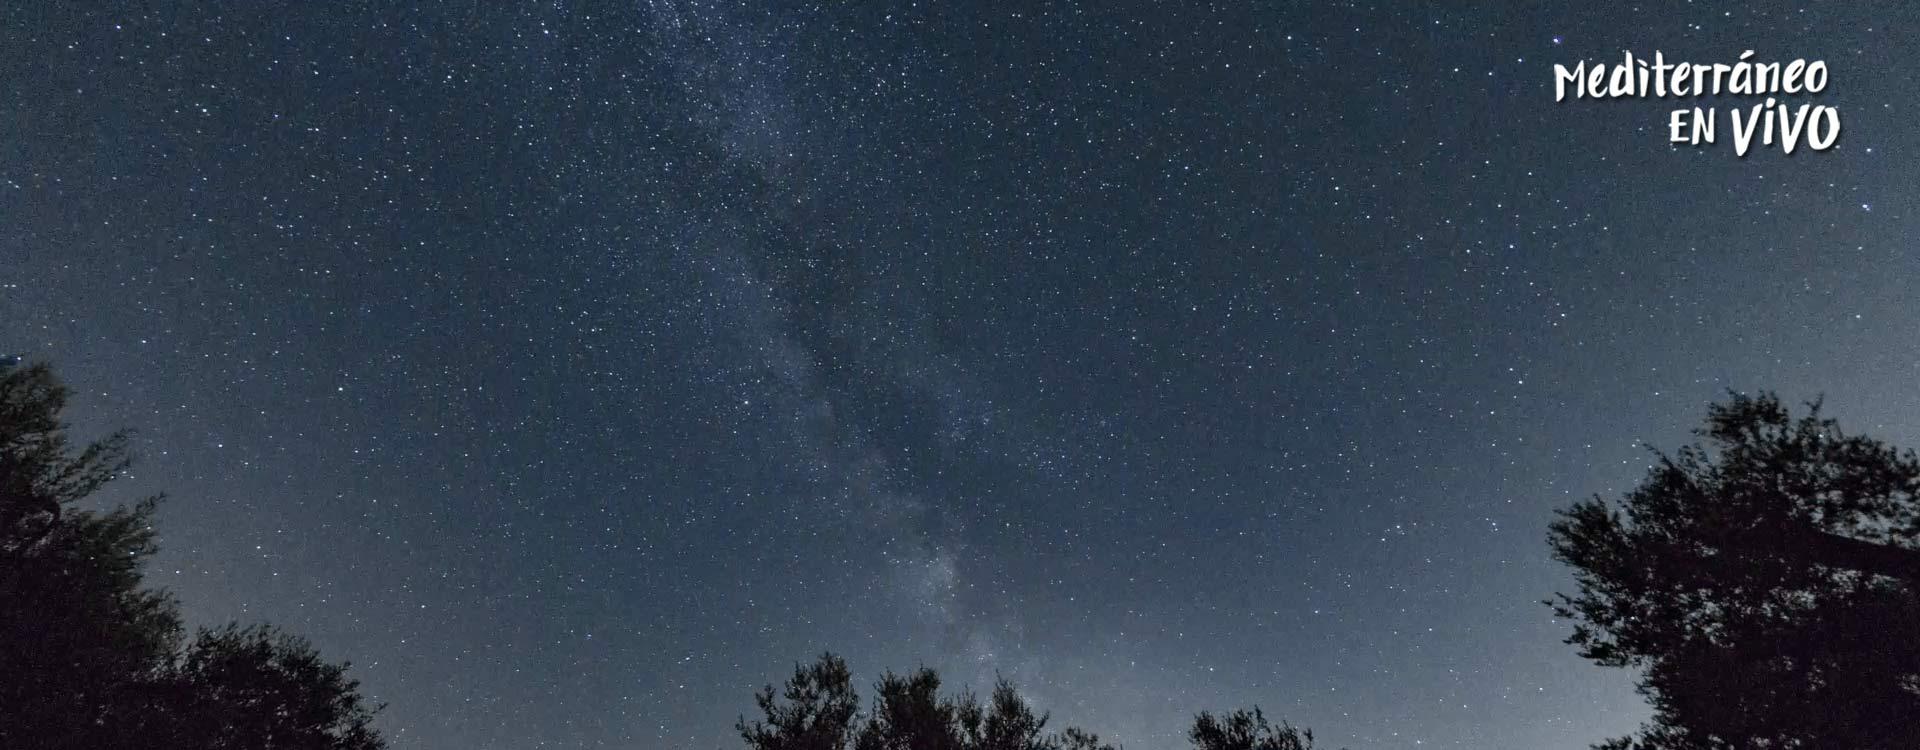 Imagen astroturismo de una noche estrellada